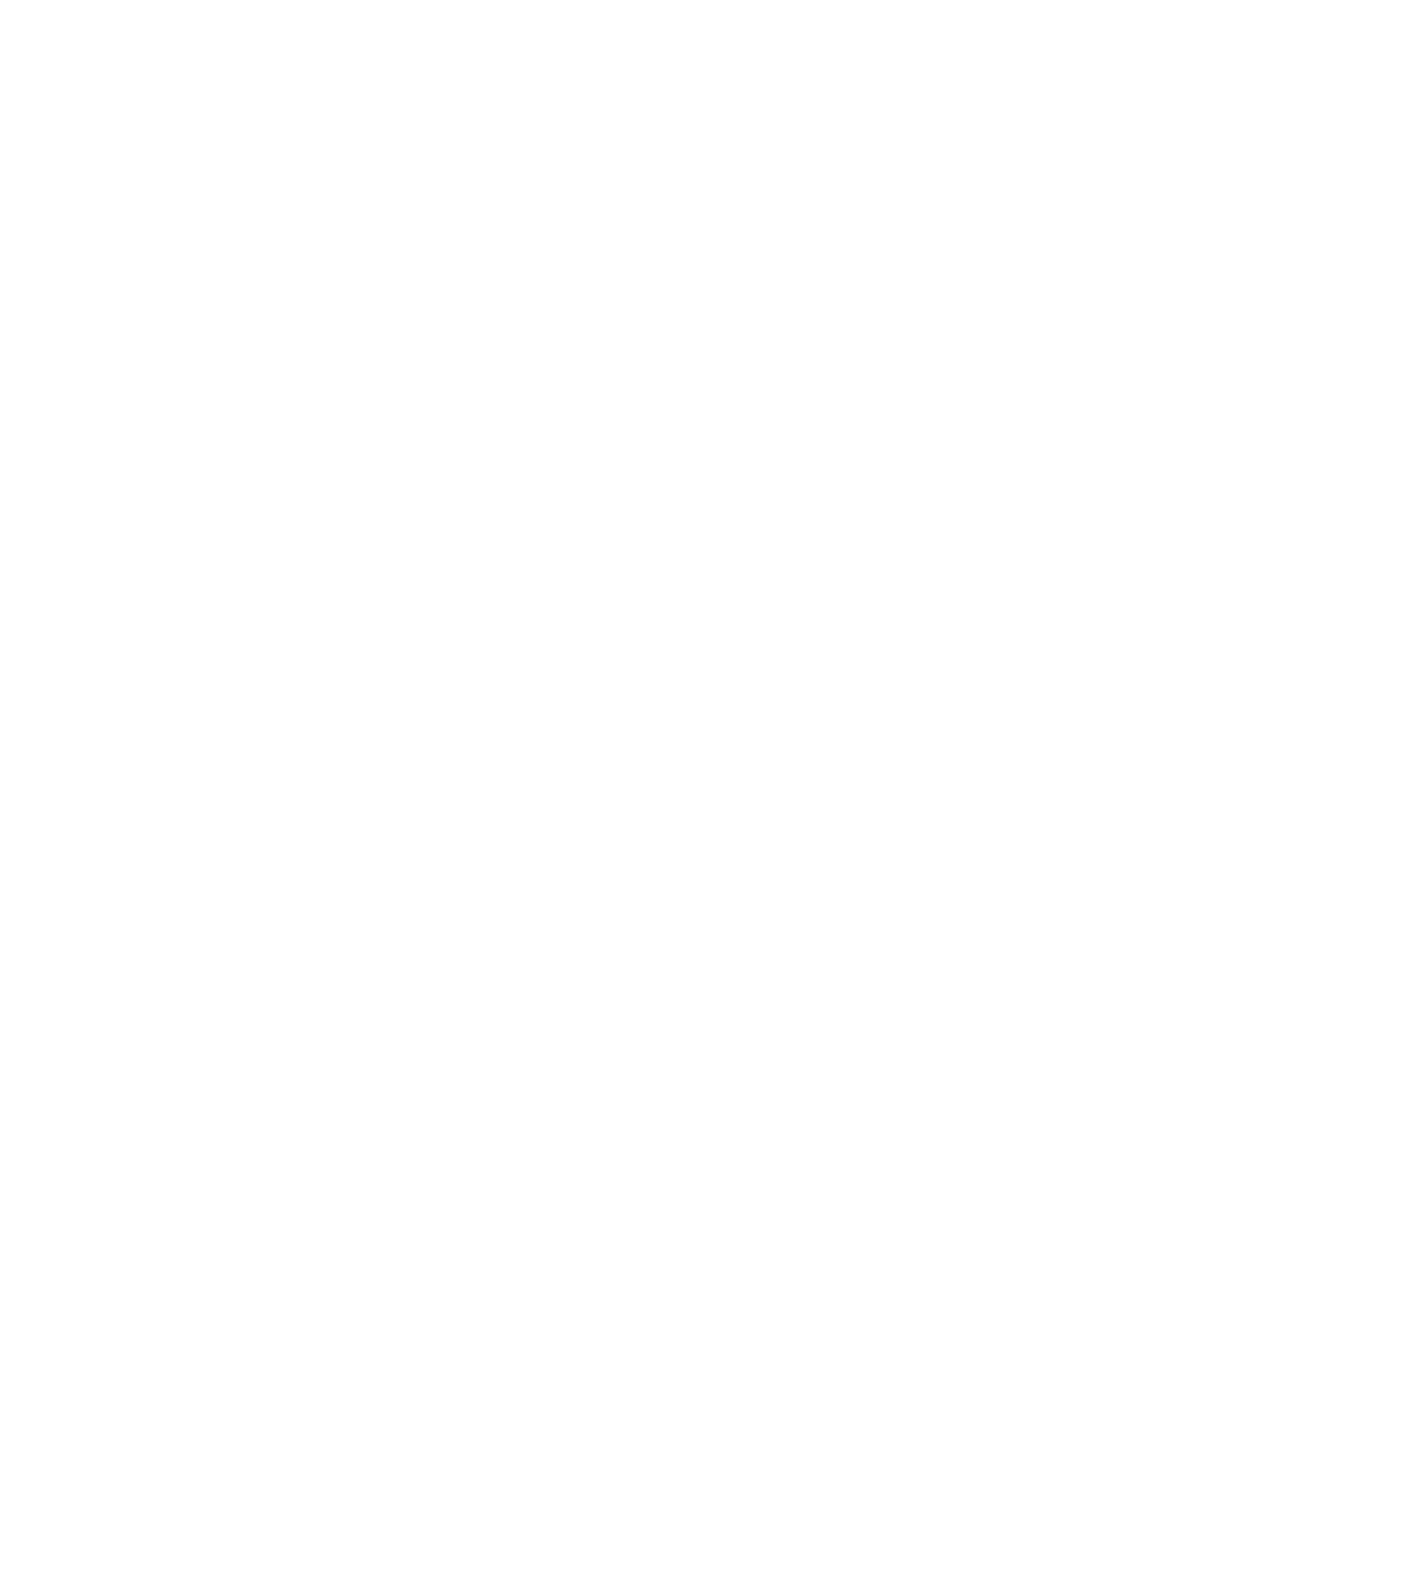 ADTRAN logo for dark backgrounds (transparent PNG)